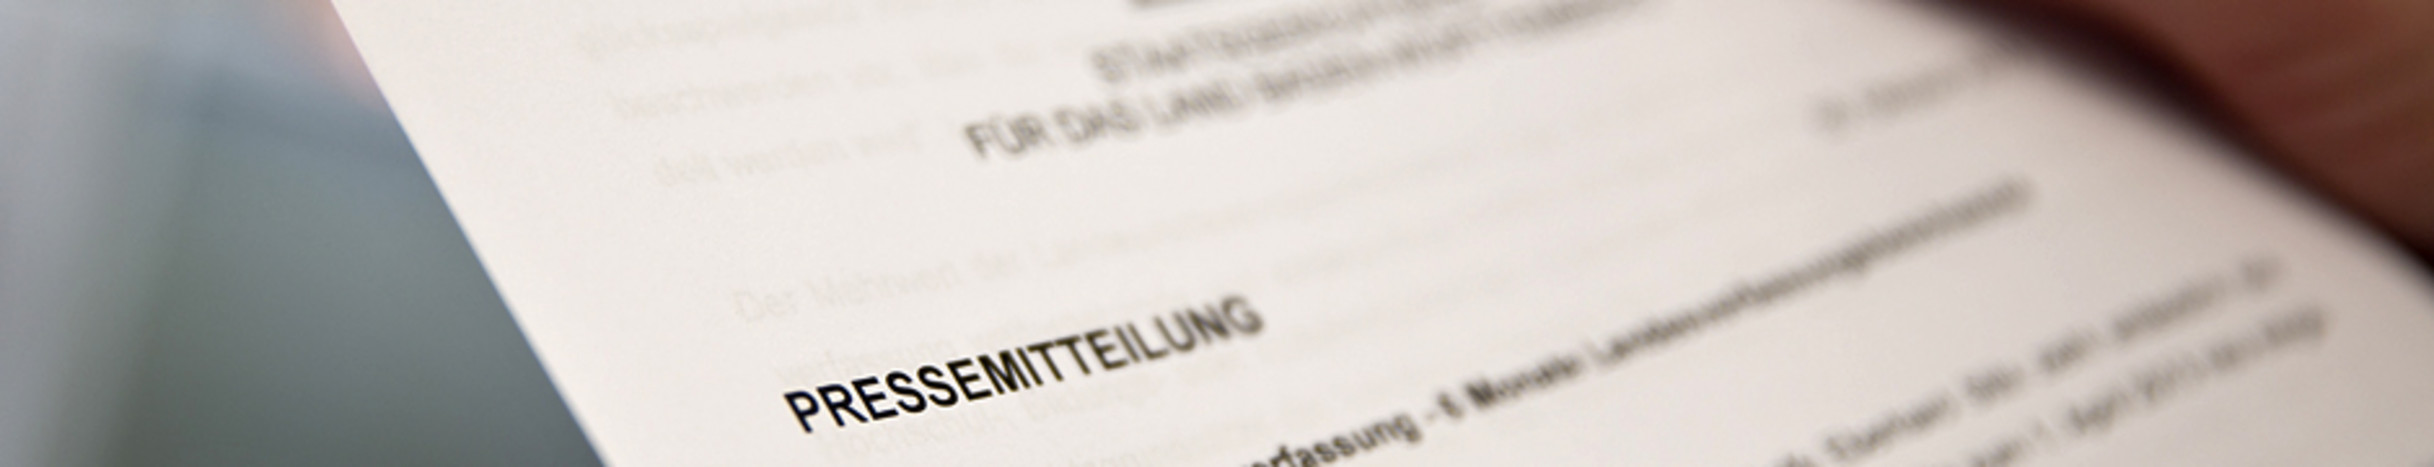 Ausschnitt einer Pressemitteilung des Staatsgerichtshofs für das Land Baden-Württemberg